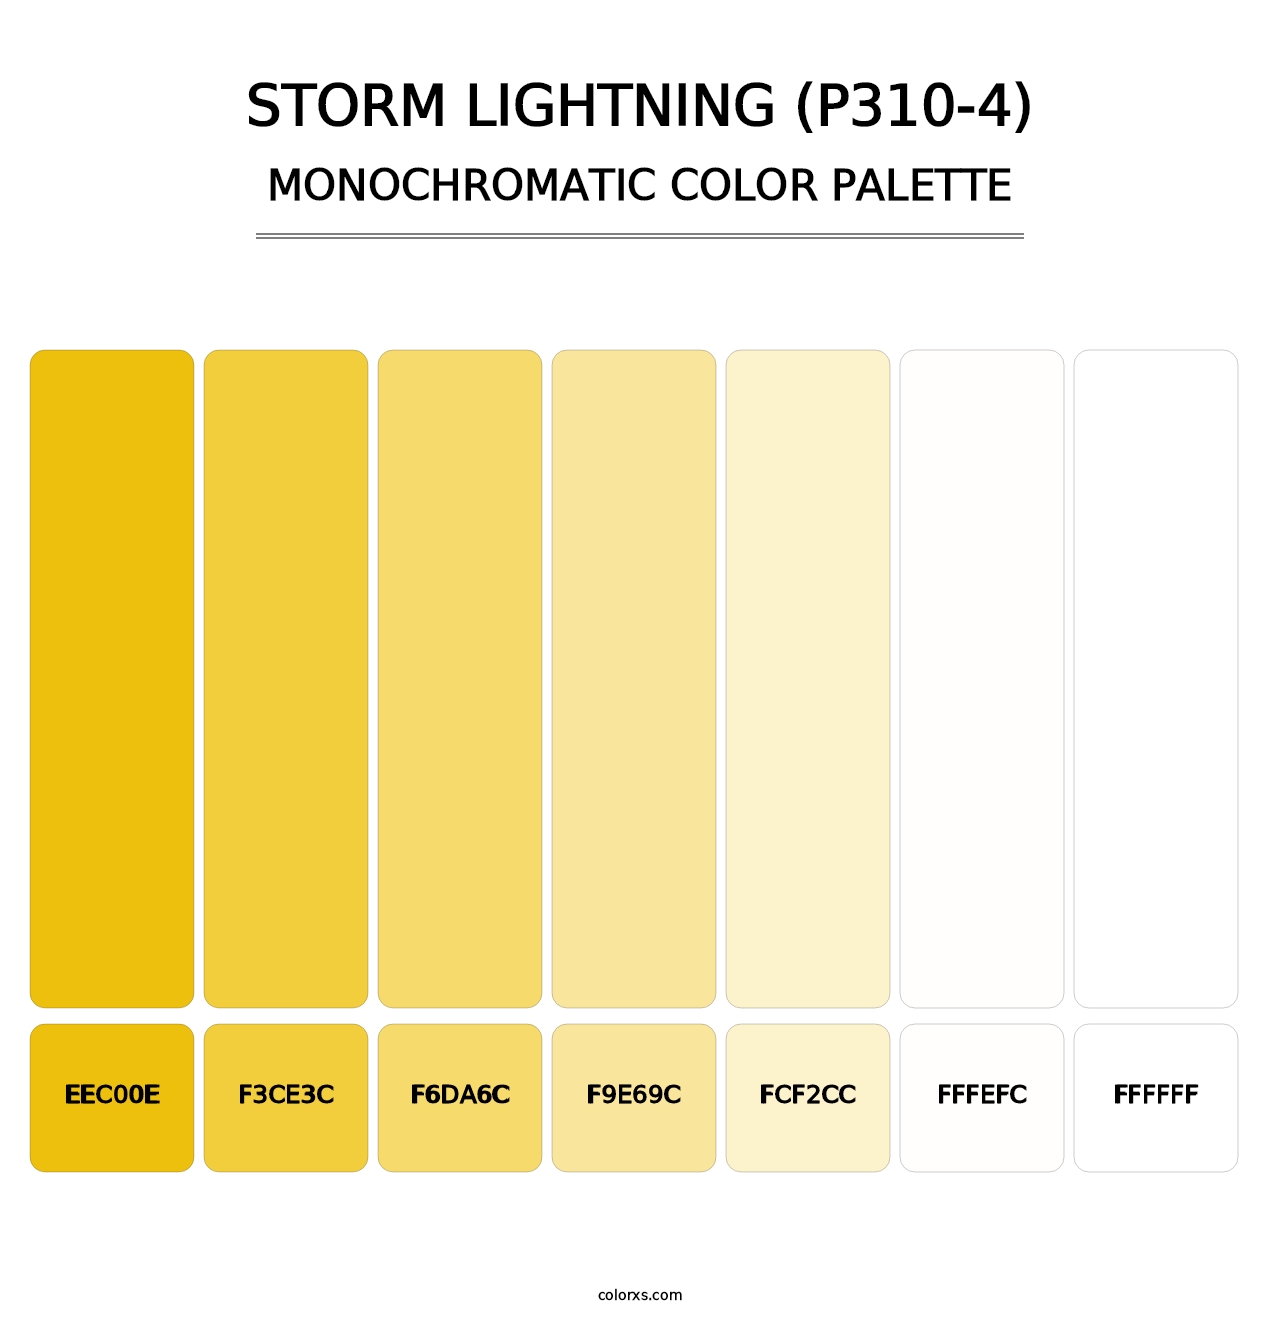 Storm Lightning (P310-4) - Monochromatic Color Palette